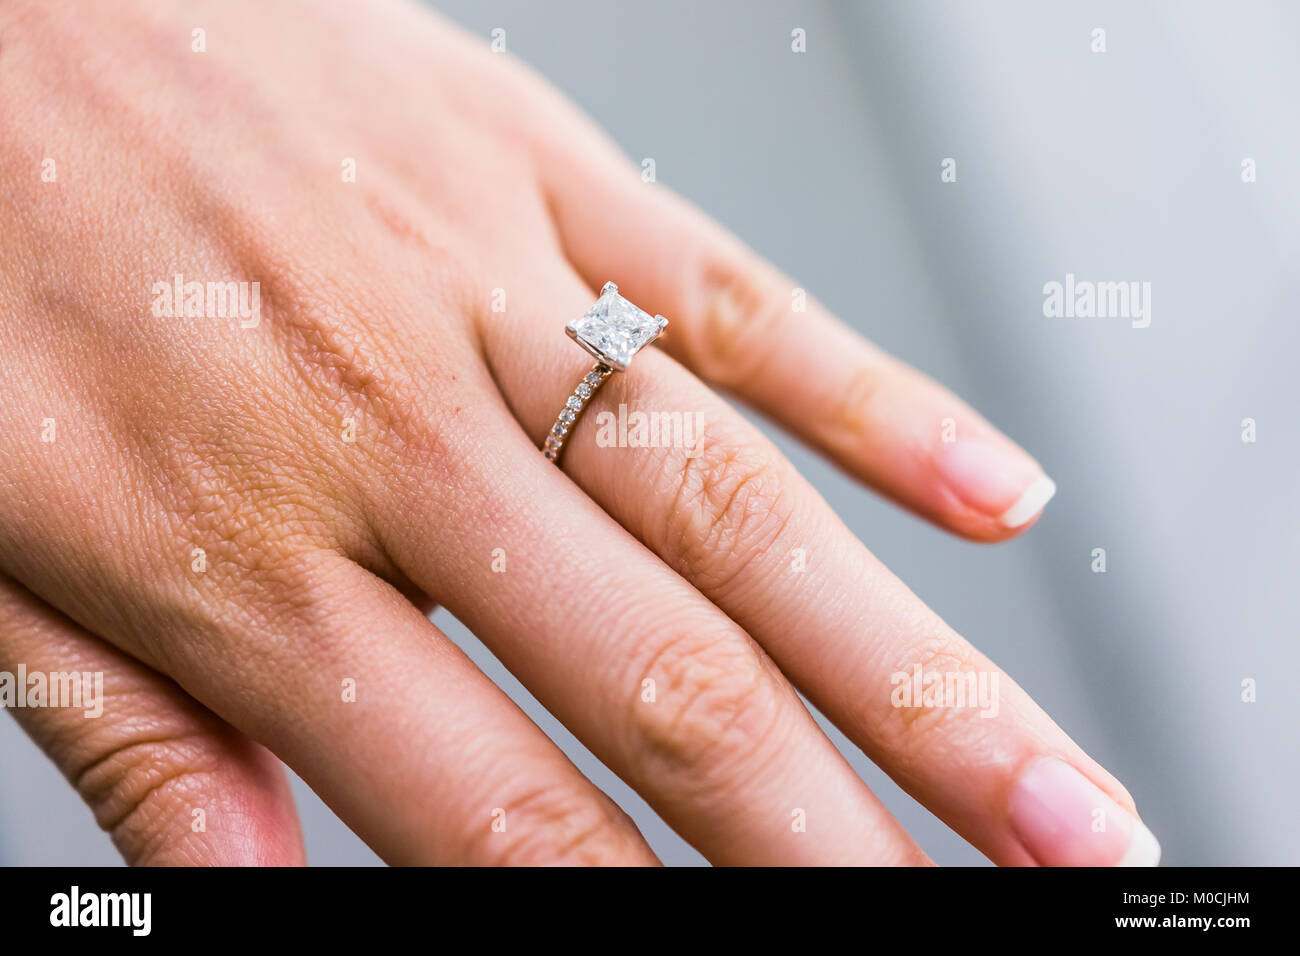 Godagoda 1pcs Round/Oval Flash Princess Ring Engagement Marriage Ring 